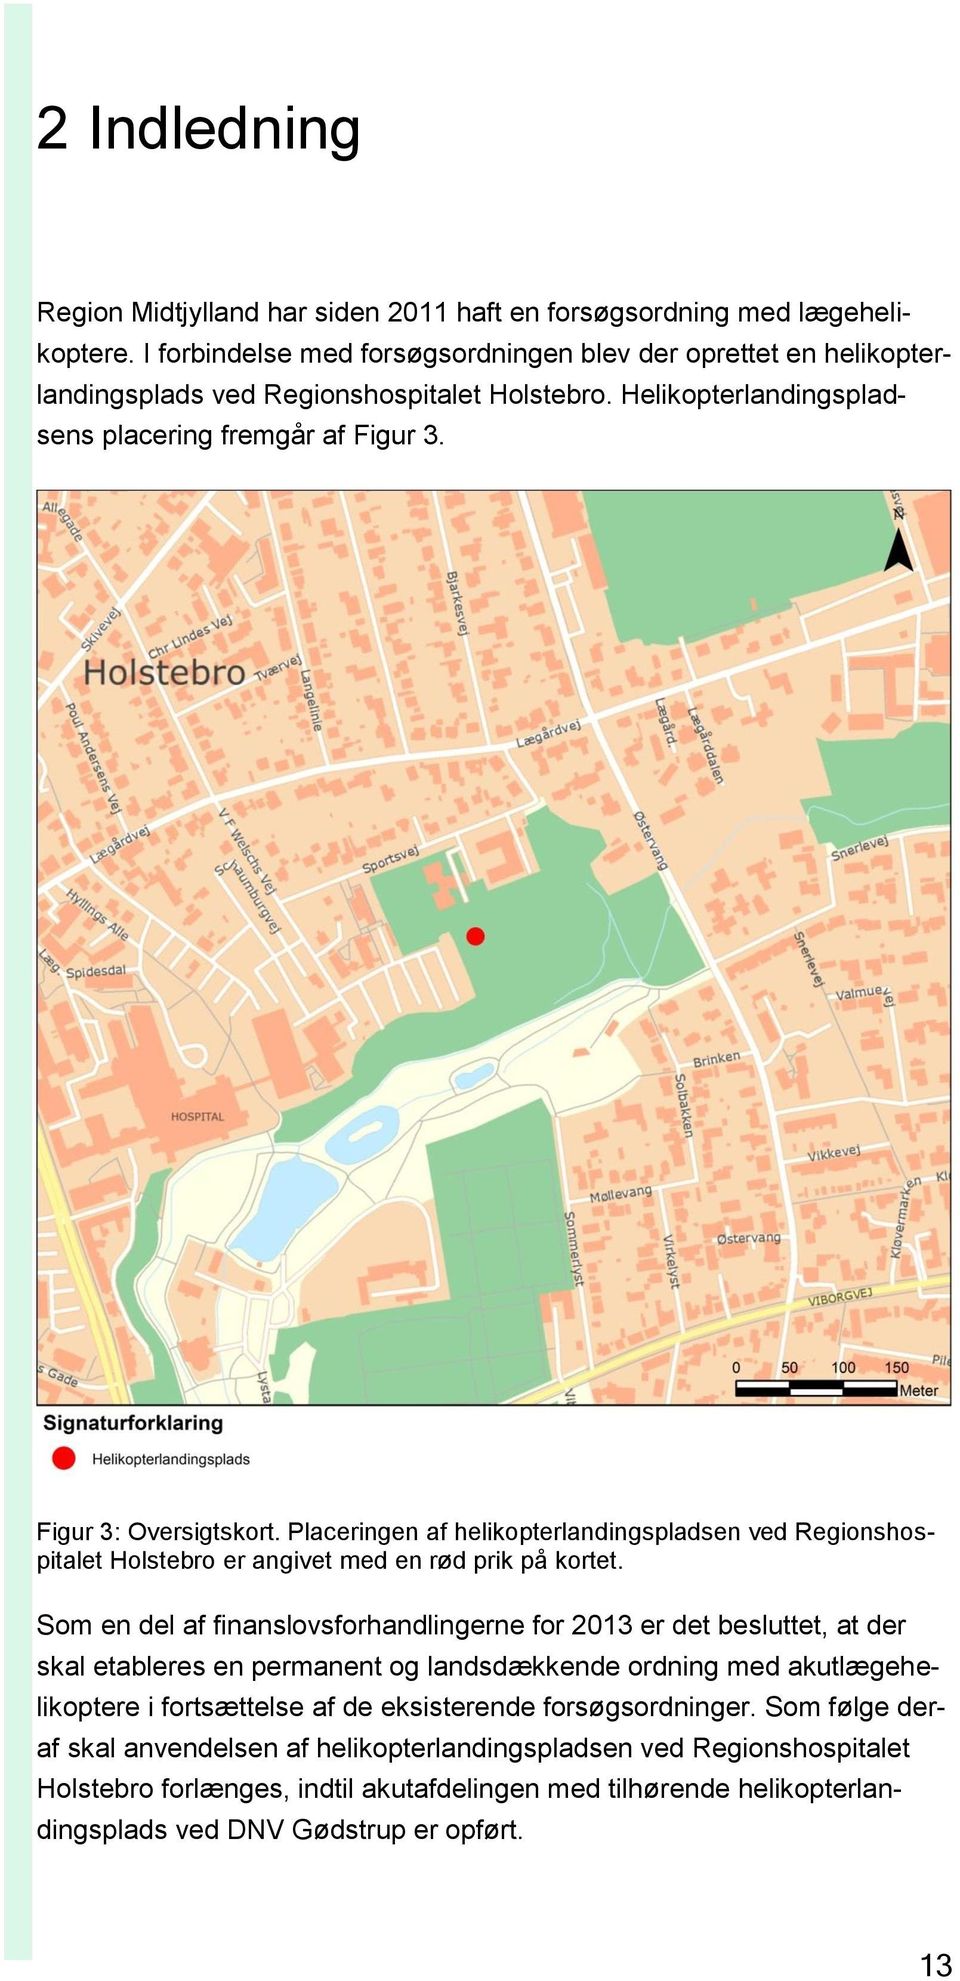 Placeringen af helikopterlandingspladsen ved Regionshospitalet Holstebro er angivet med en rød prik på kortet.